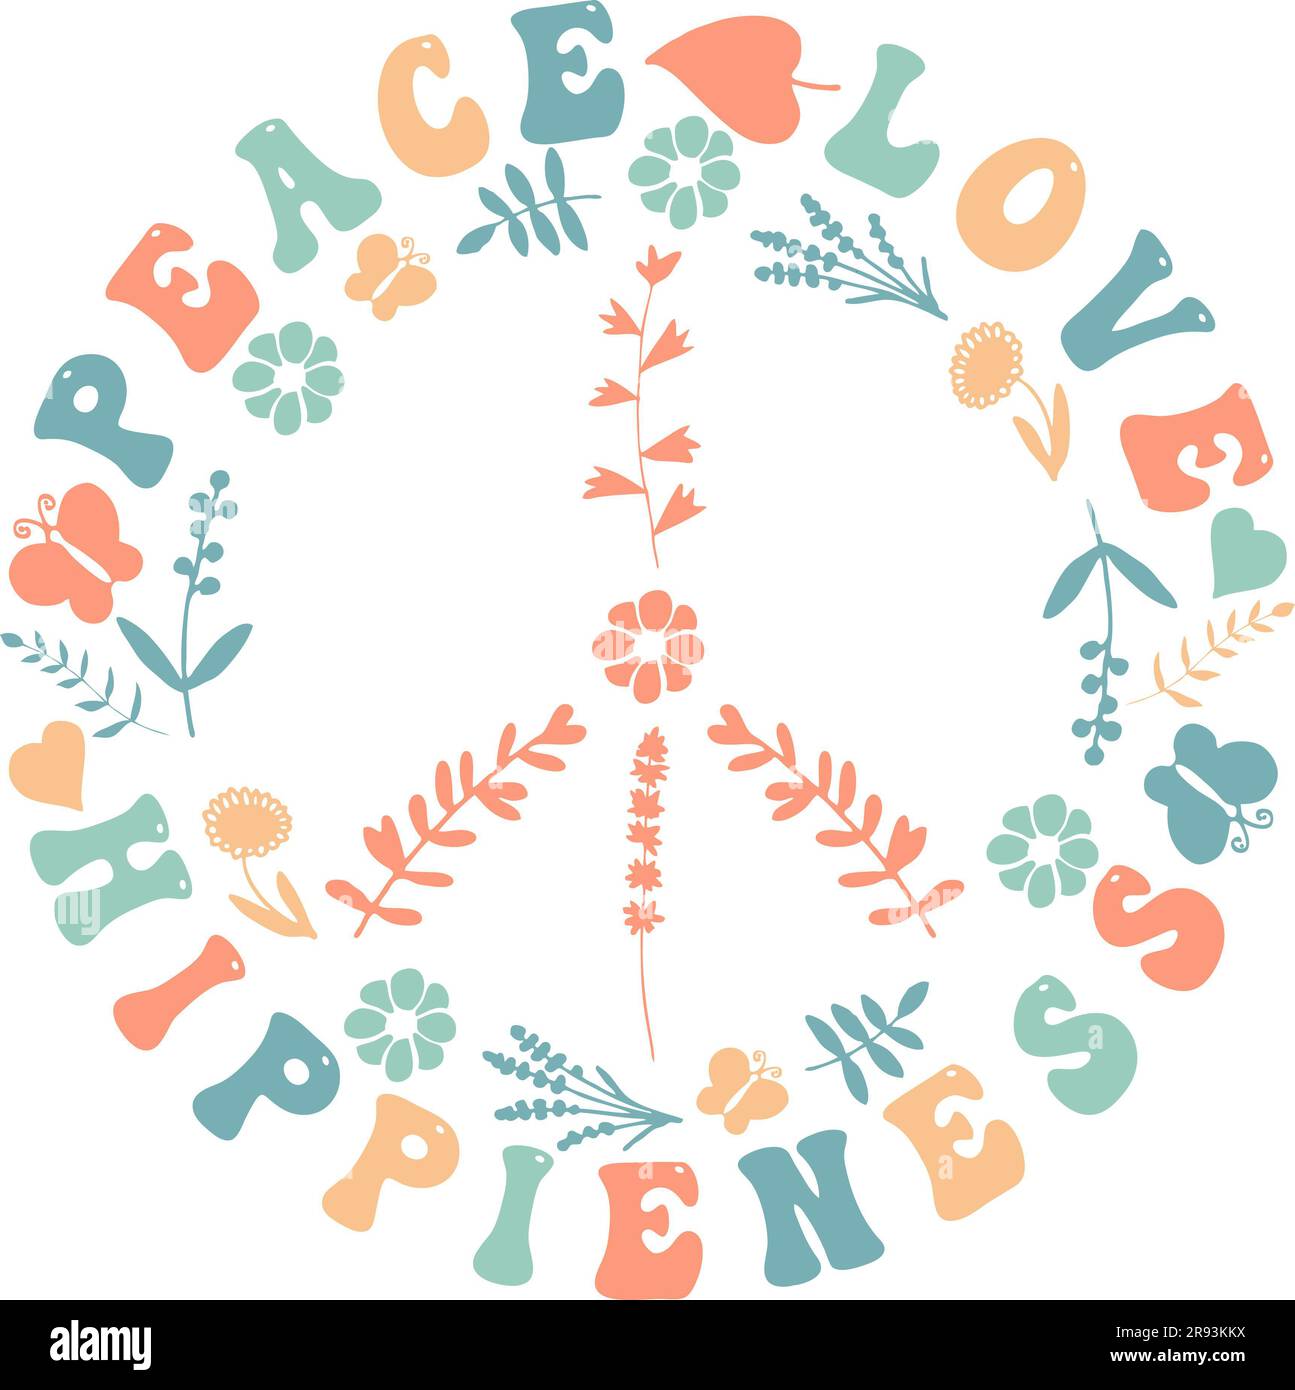 Pace amore Hippieness - segno di pace Hippie colorato e carino Foto Stock